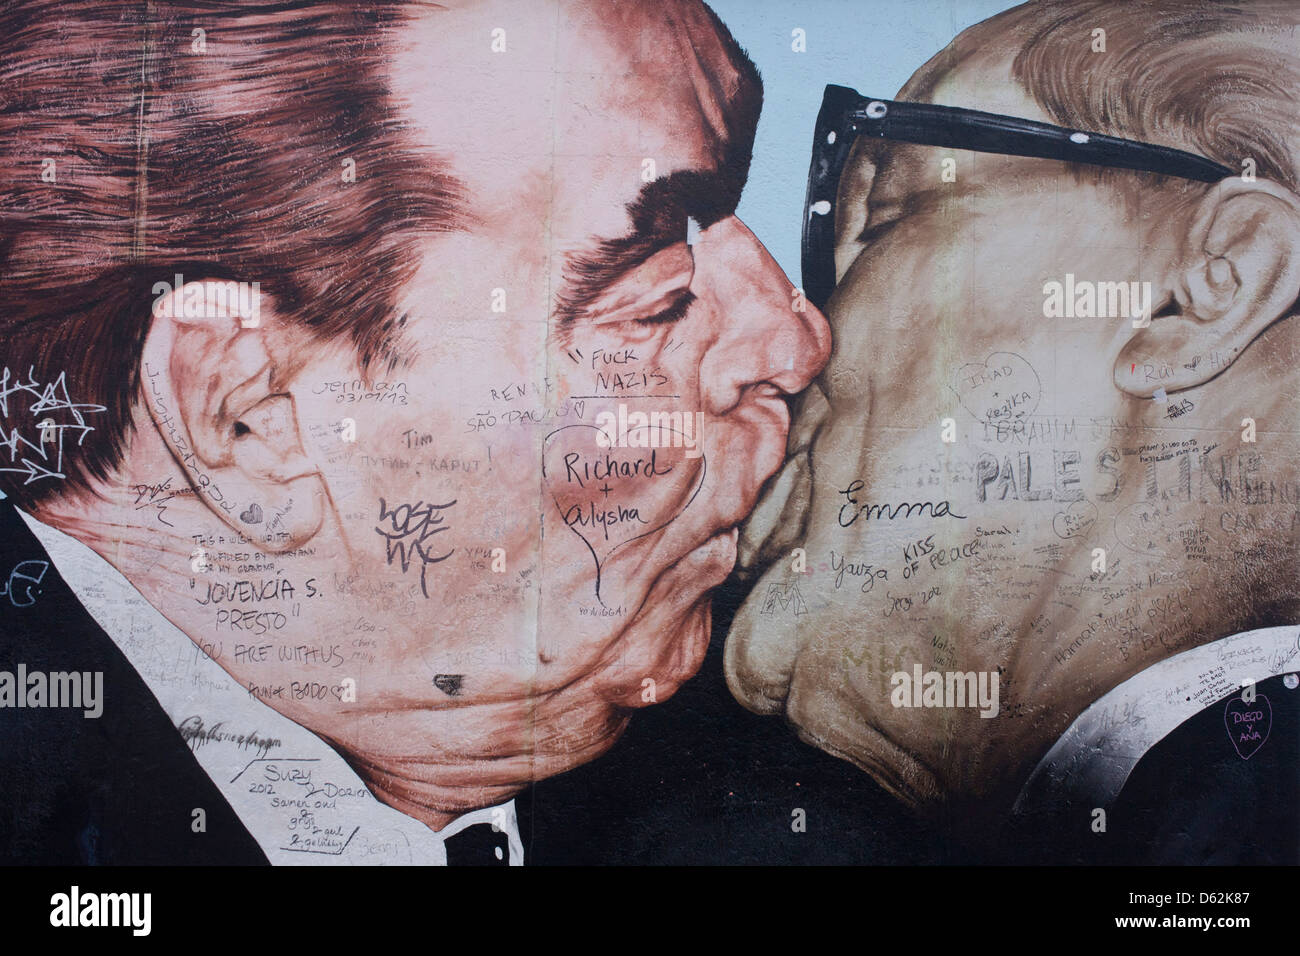 Ein Detail aus dem überdimensionalen Kunstwerk mit dem Titel Bruderschaft Kiss (Bruderkuss) von Dmitry Vrubel, die einmal einen Teil der berüchtigten Berliner Mauer im westlichen Deutschland russische geschmückt. Die beiden Männer küssen auf den Lippen, eines der berühmtesten Gemälde, die ein geteiltes Europa während des Kalten Krieges symbolisierte. Der kommunistische sowjetische Führer Leonid Brezhnev küsst seinen Amtskollegen der NVA (DDR) Erich Honecker, die letztlich auf Tassen und T-shirts in der ganzen Welt kopiert wurde, vor der Zerstörung durch die Behörden. .. (Mehr in Beschreibung). Stockfoto